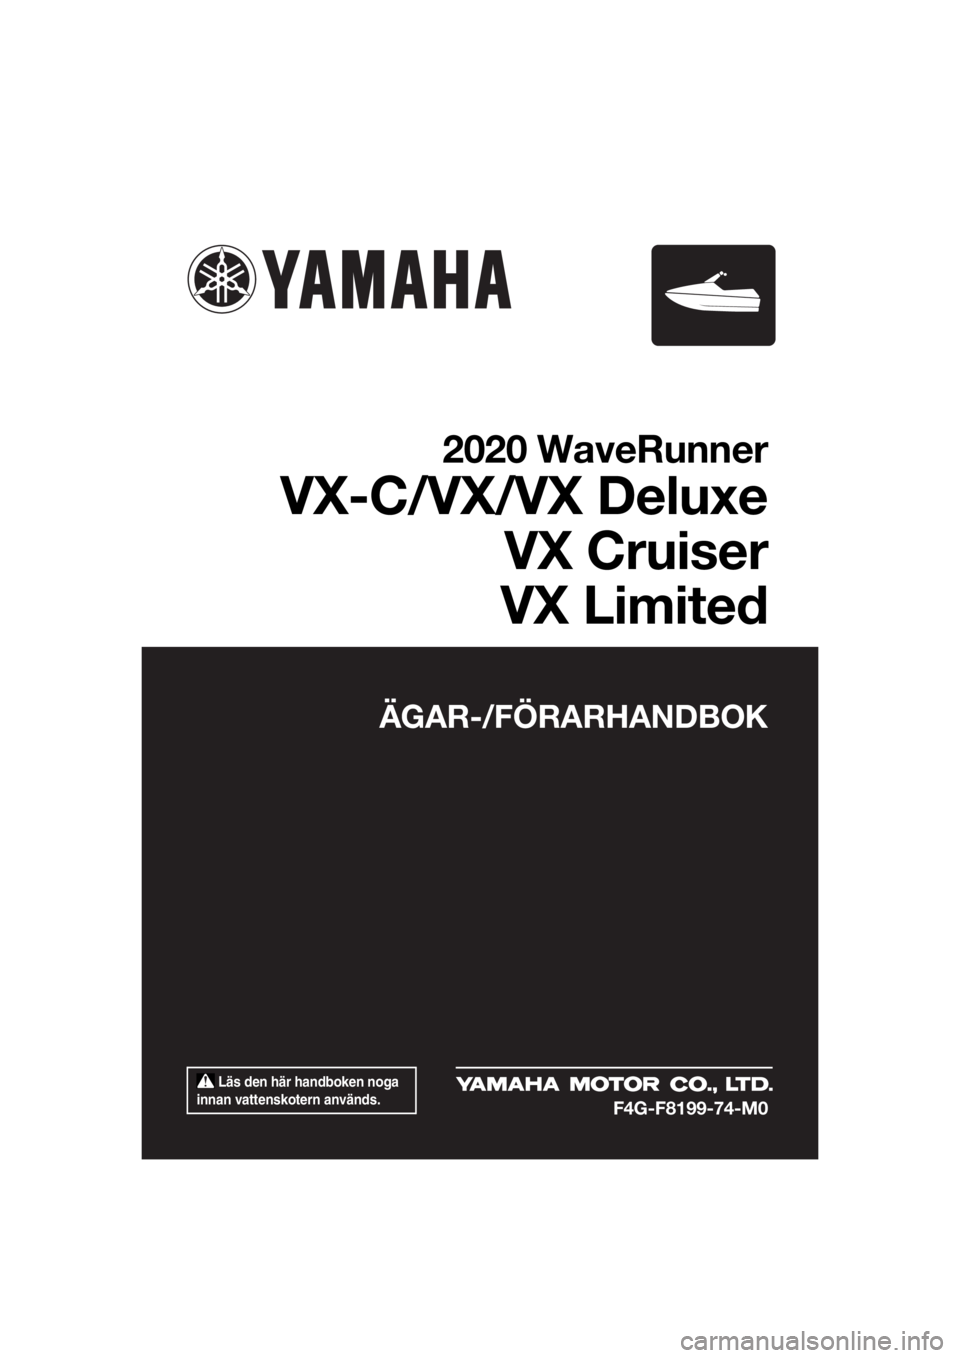 YAMAHA VX CRUISER 2020  Bruksanvisningar (in Swedish)  Läs den här handboken noga 
innan vattenskotern används.
ÄGAR-/FÖRARHANDBOK
2020 WaveRunner
VX-C/VX/VX Deluxe
VX Cruiser
VX Limited
F4G-F8199-74-M0
UF4G74M0.book  Page 1  Monday, July 15, 2019  